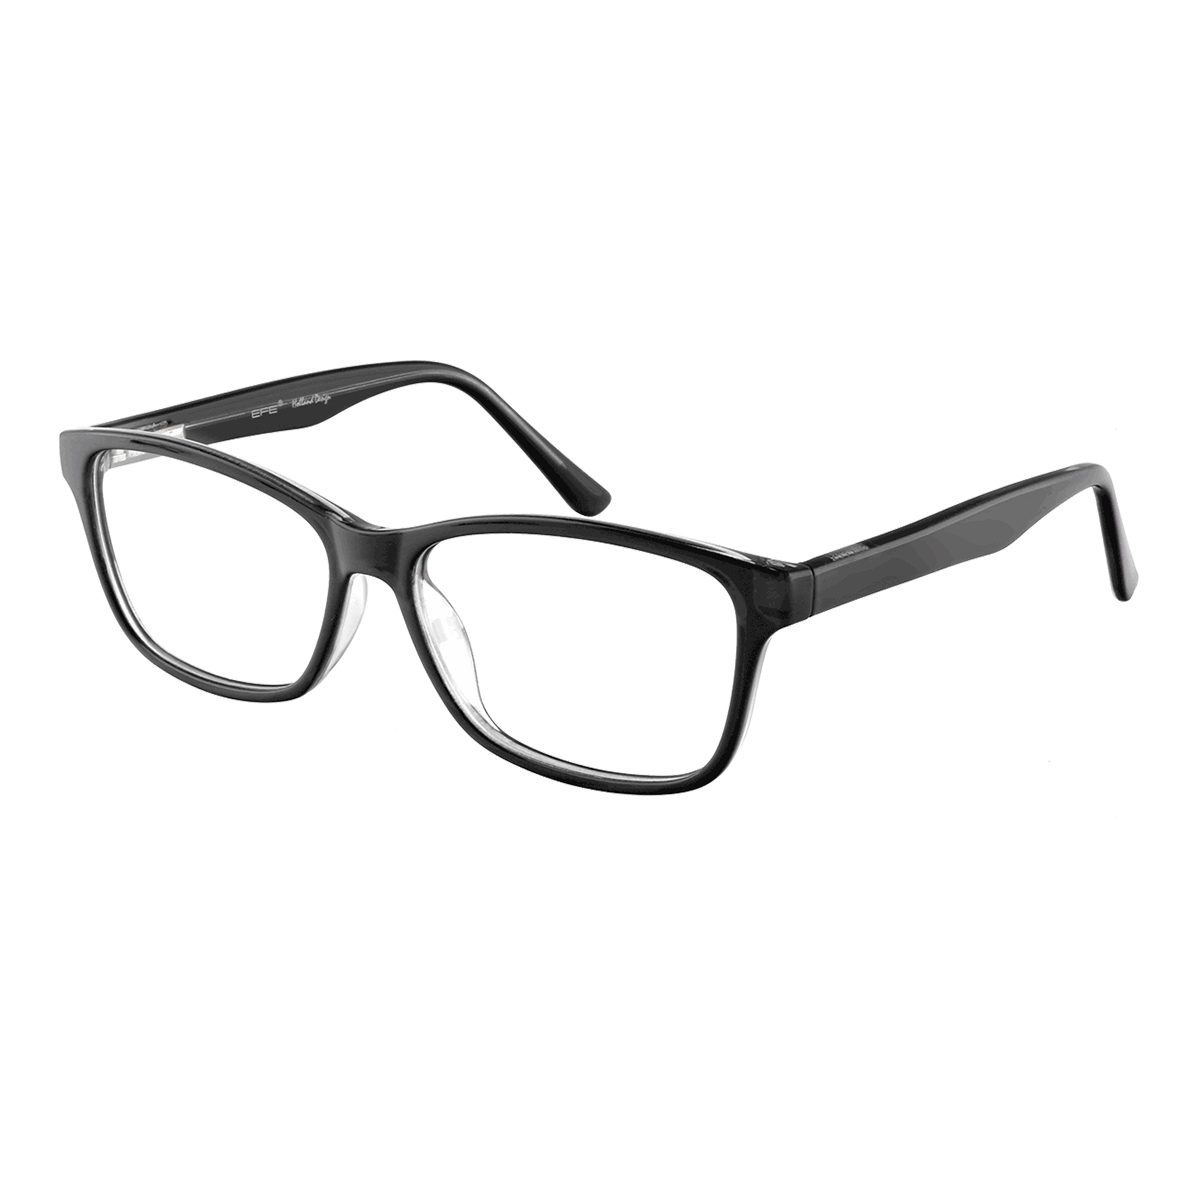 Cheek - Square Black Reading Glasses for Men & Women